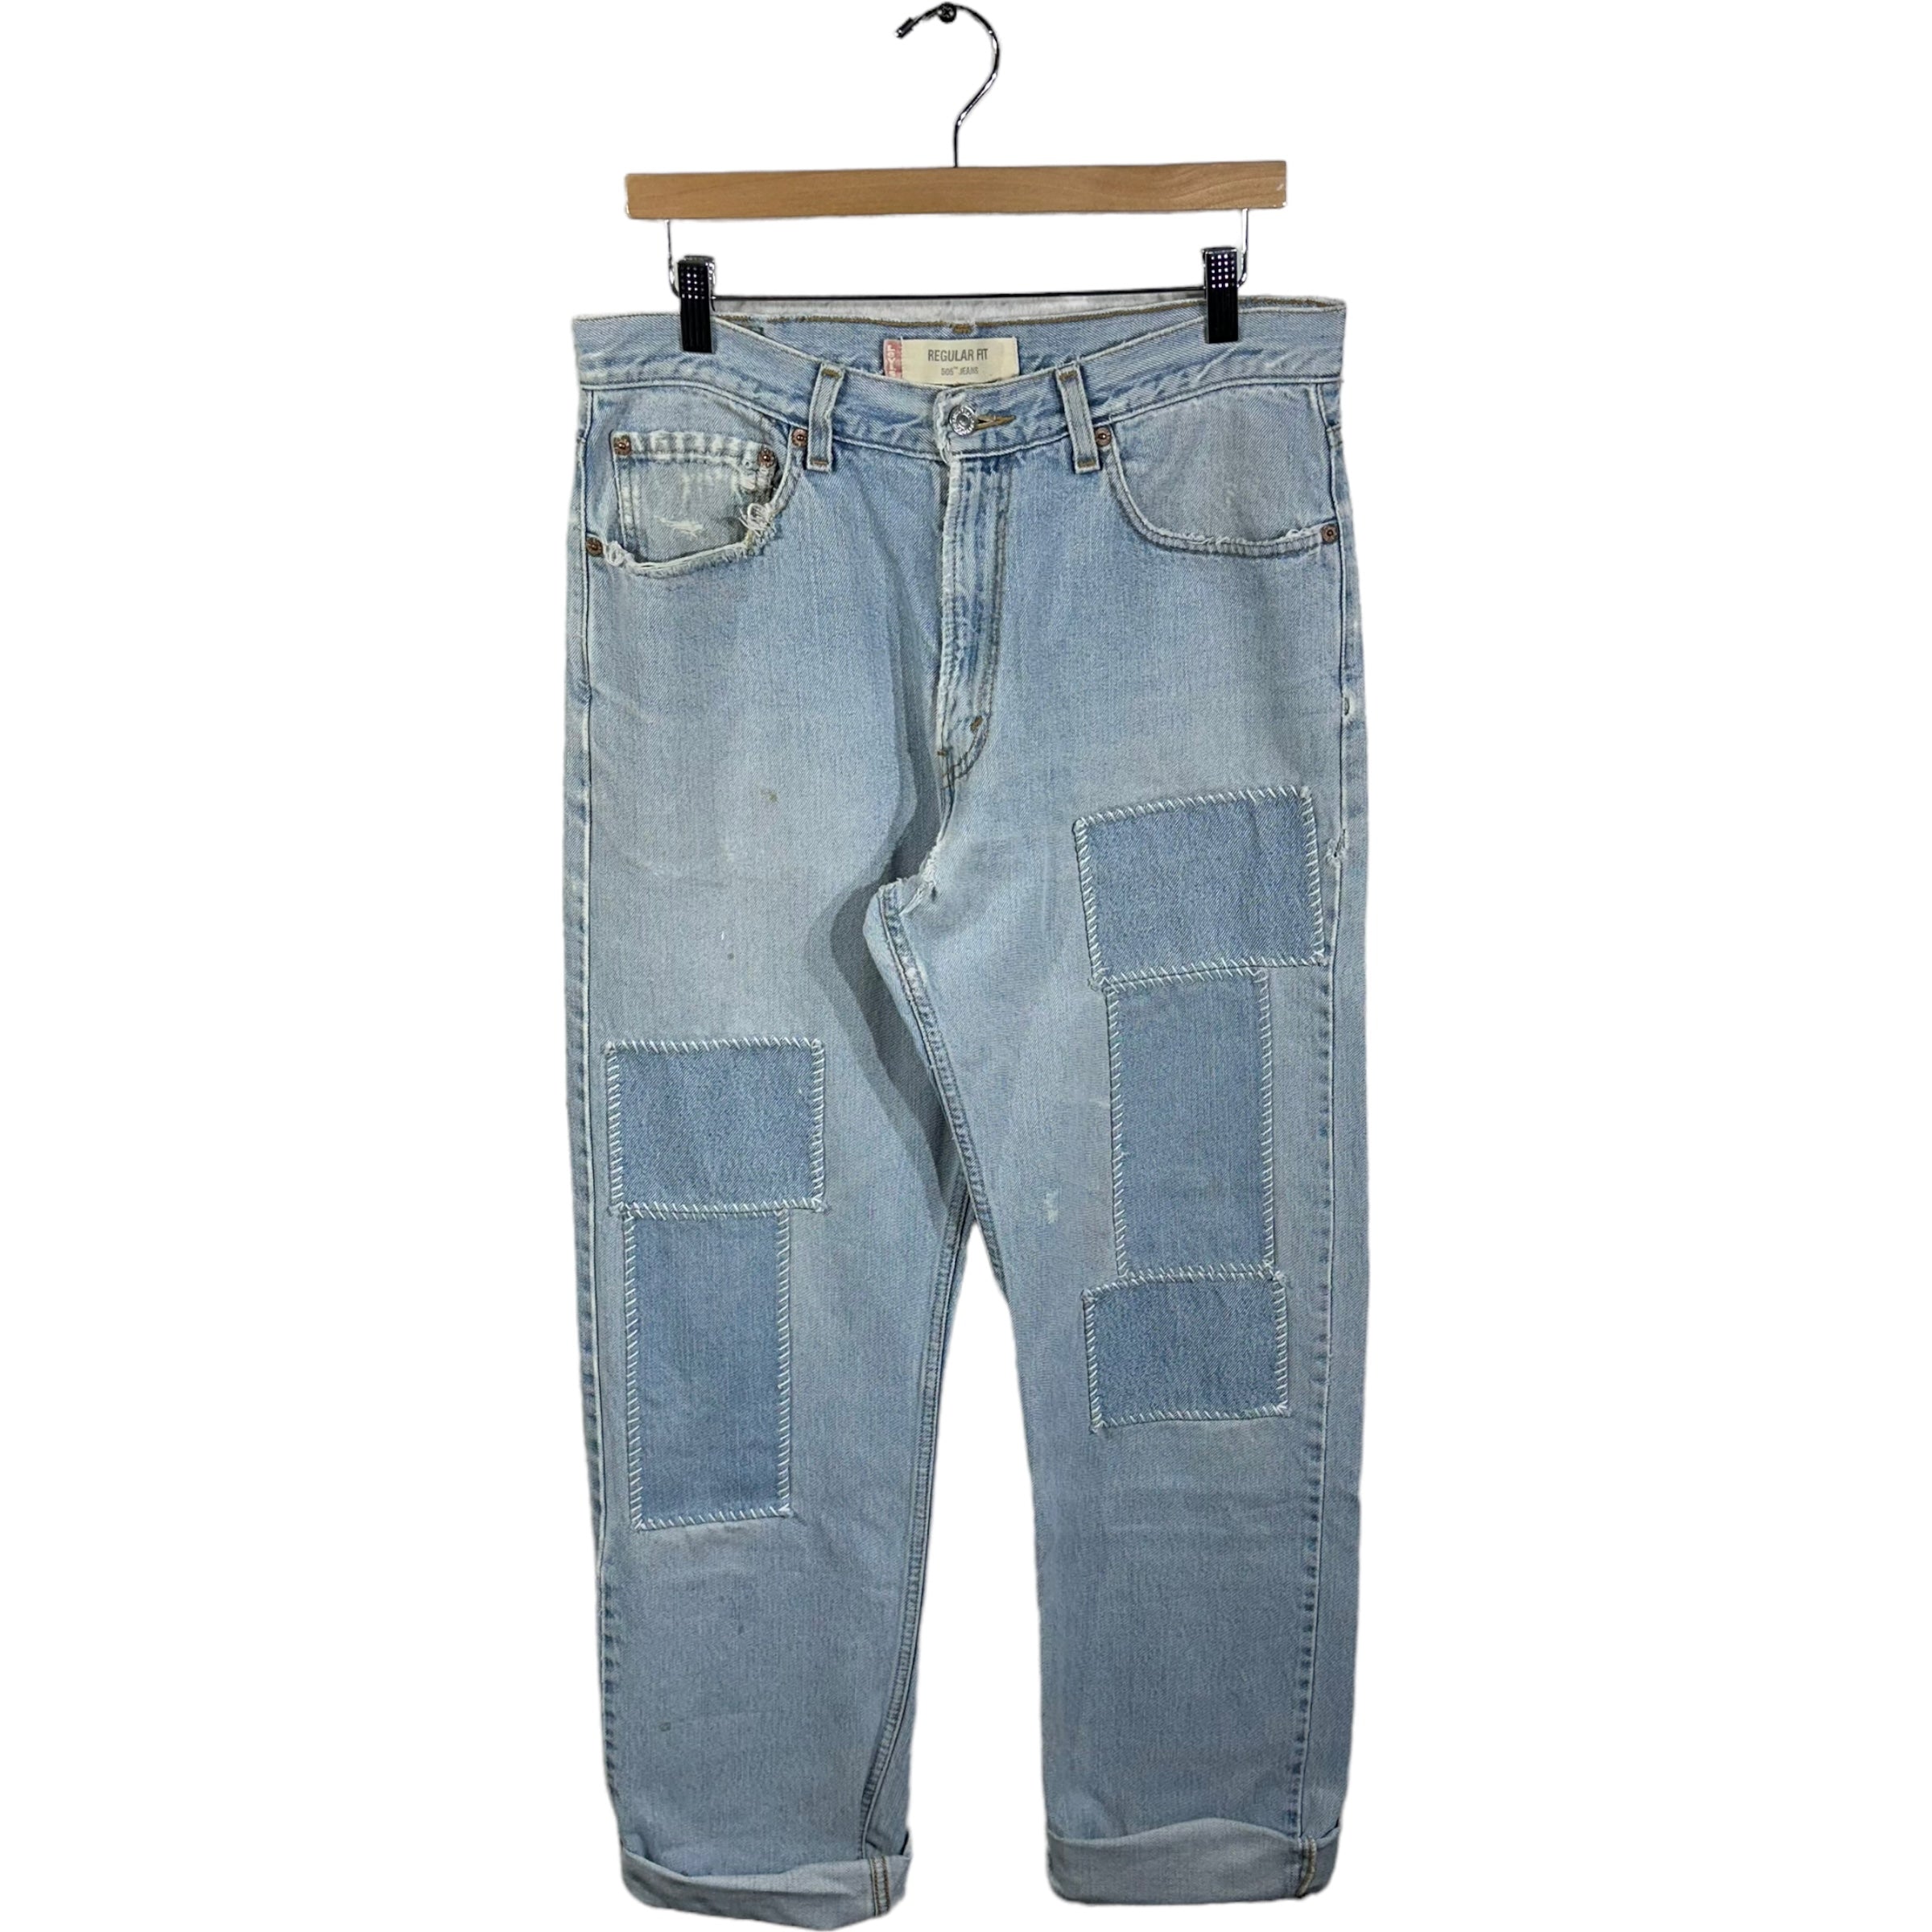 Vintage Levis' 505 Patchwork Jeans